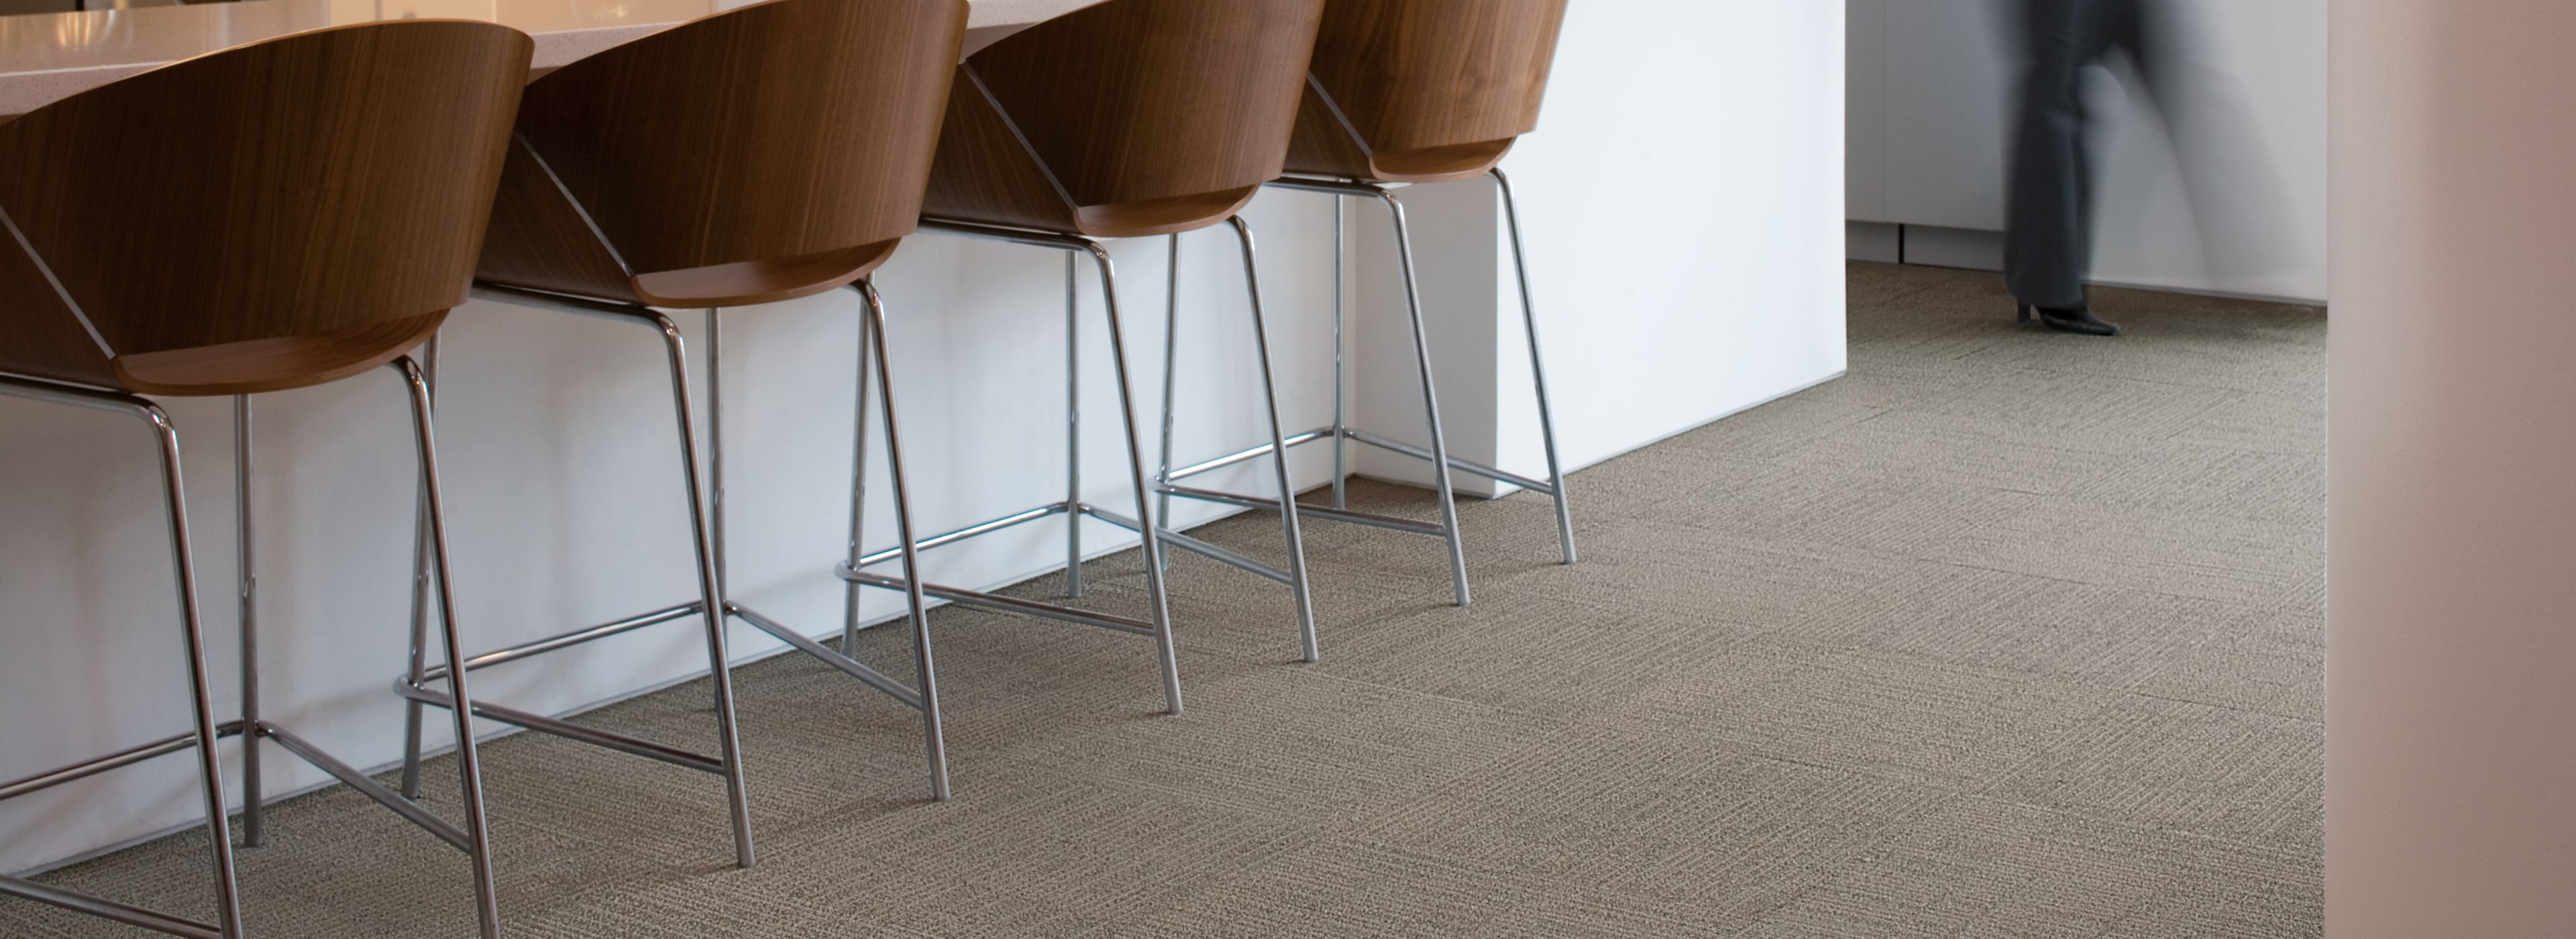 Interface Brescia carpet tile in office break area numéro d’image 1